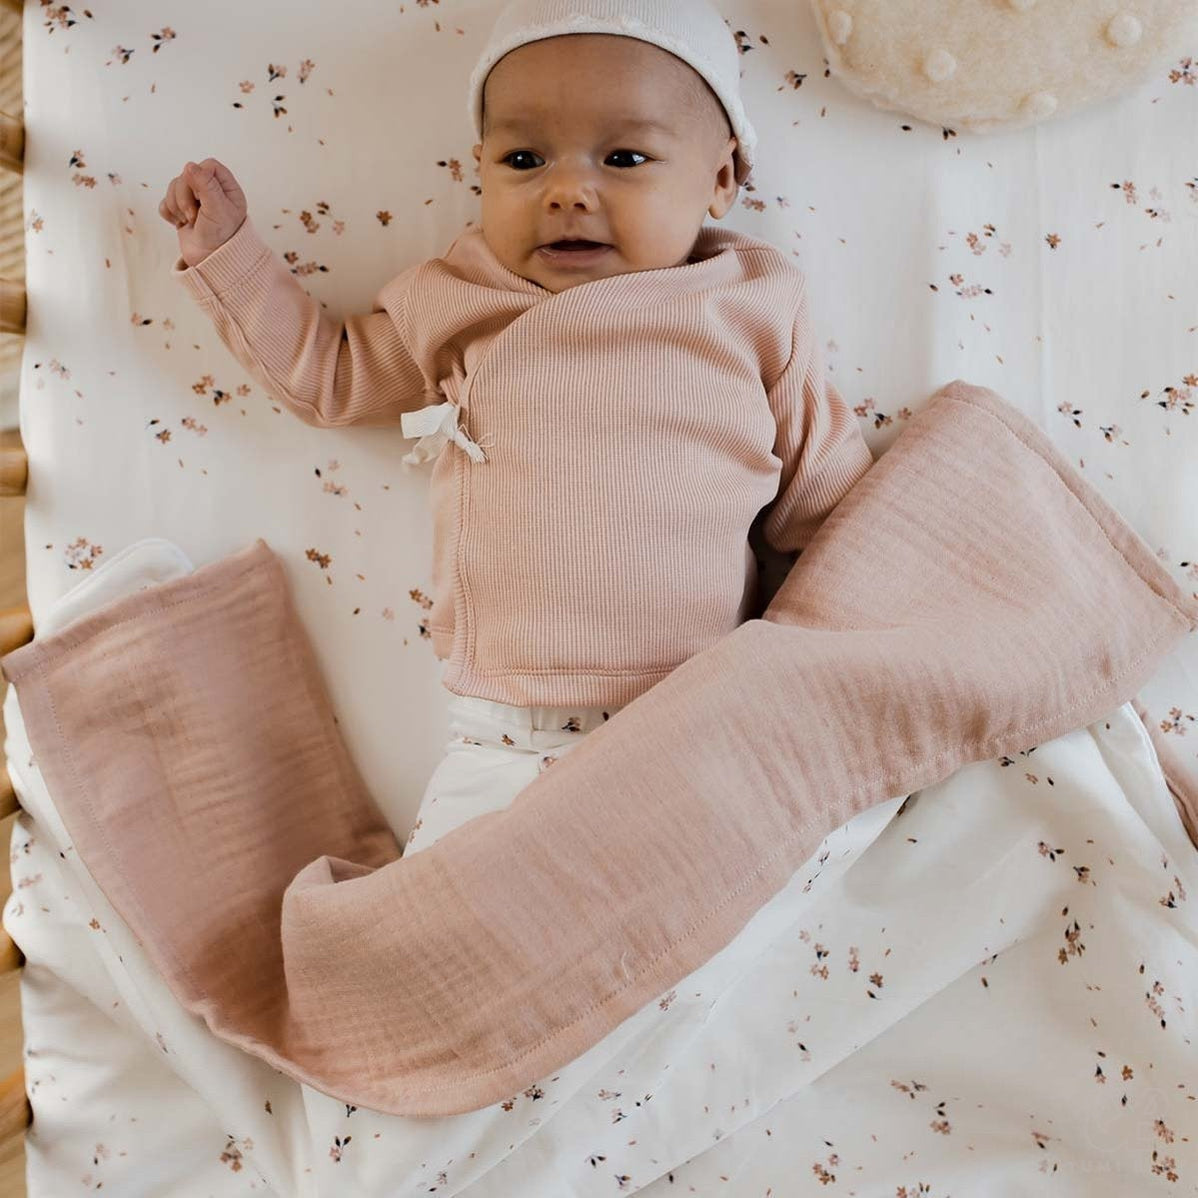 Een tevreden baby liggend op een Yumi Baby Wiegdeken deken met kersenbloesemmotief, gekleed in knusse pastelkleurige kleding en een schattige hoofdband, met een dromerige uitdrukking en een klein vuistje omhoog.